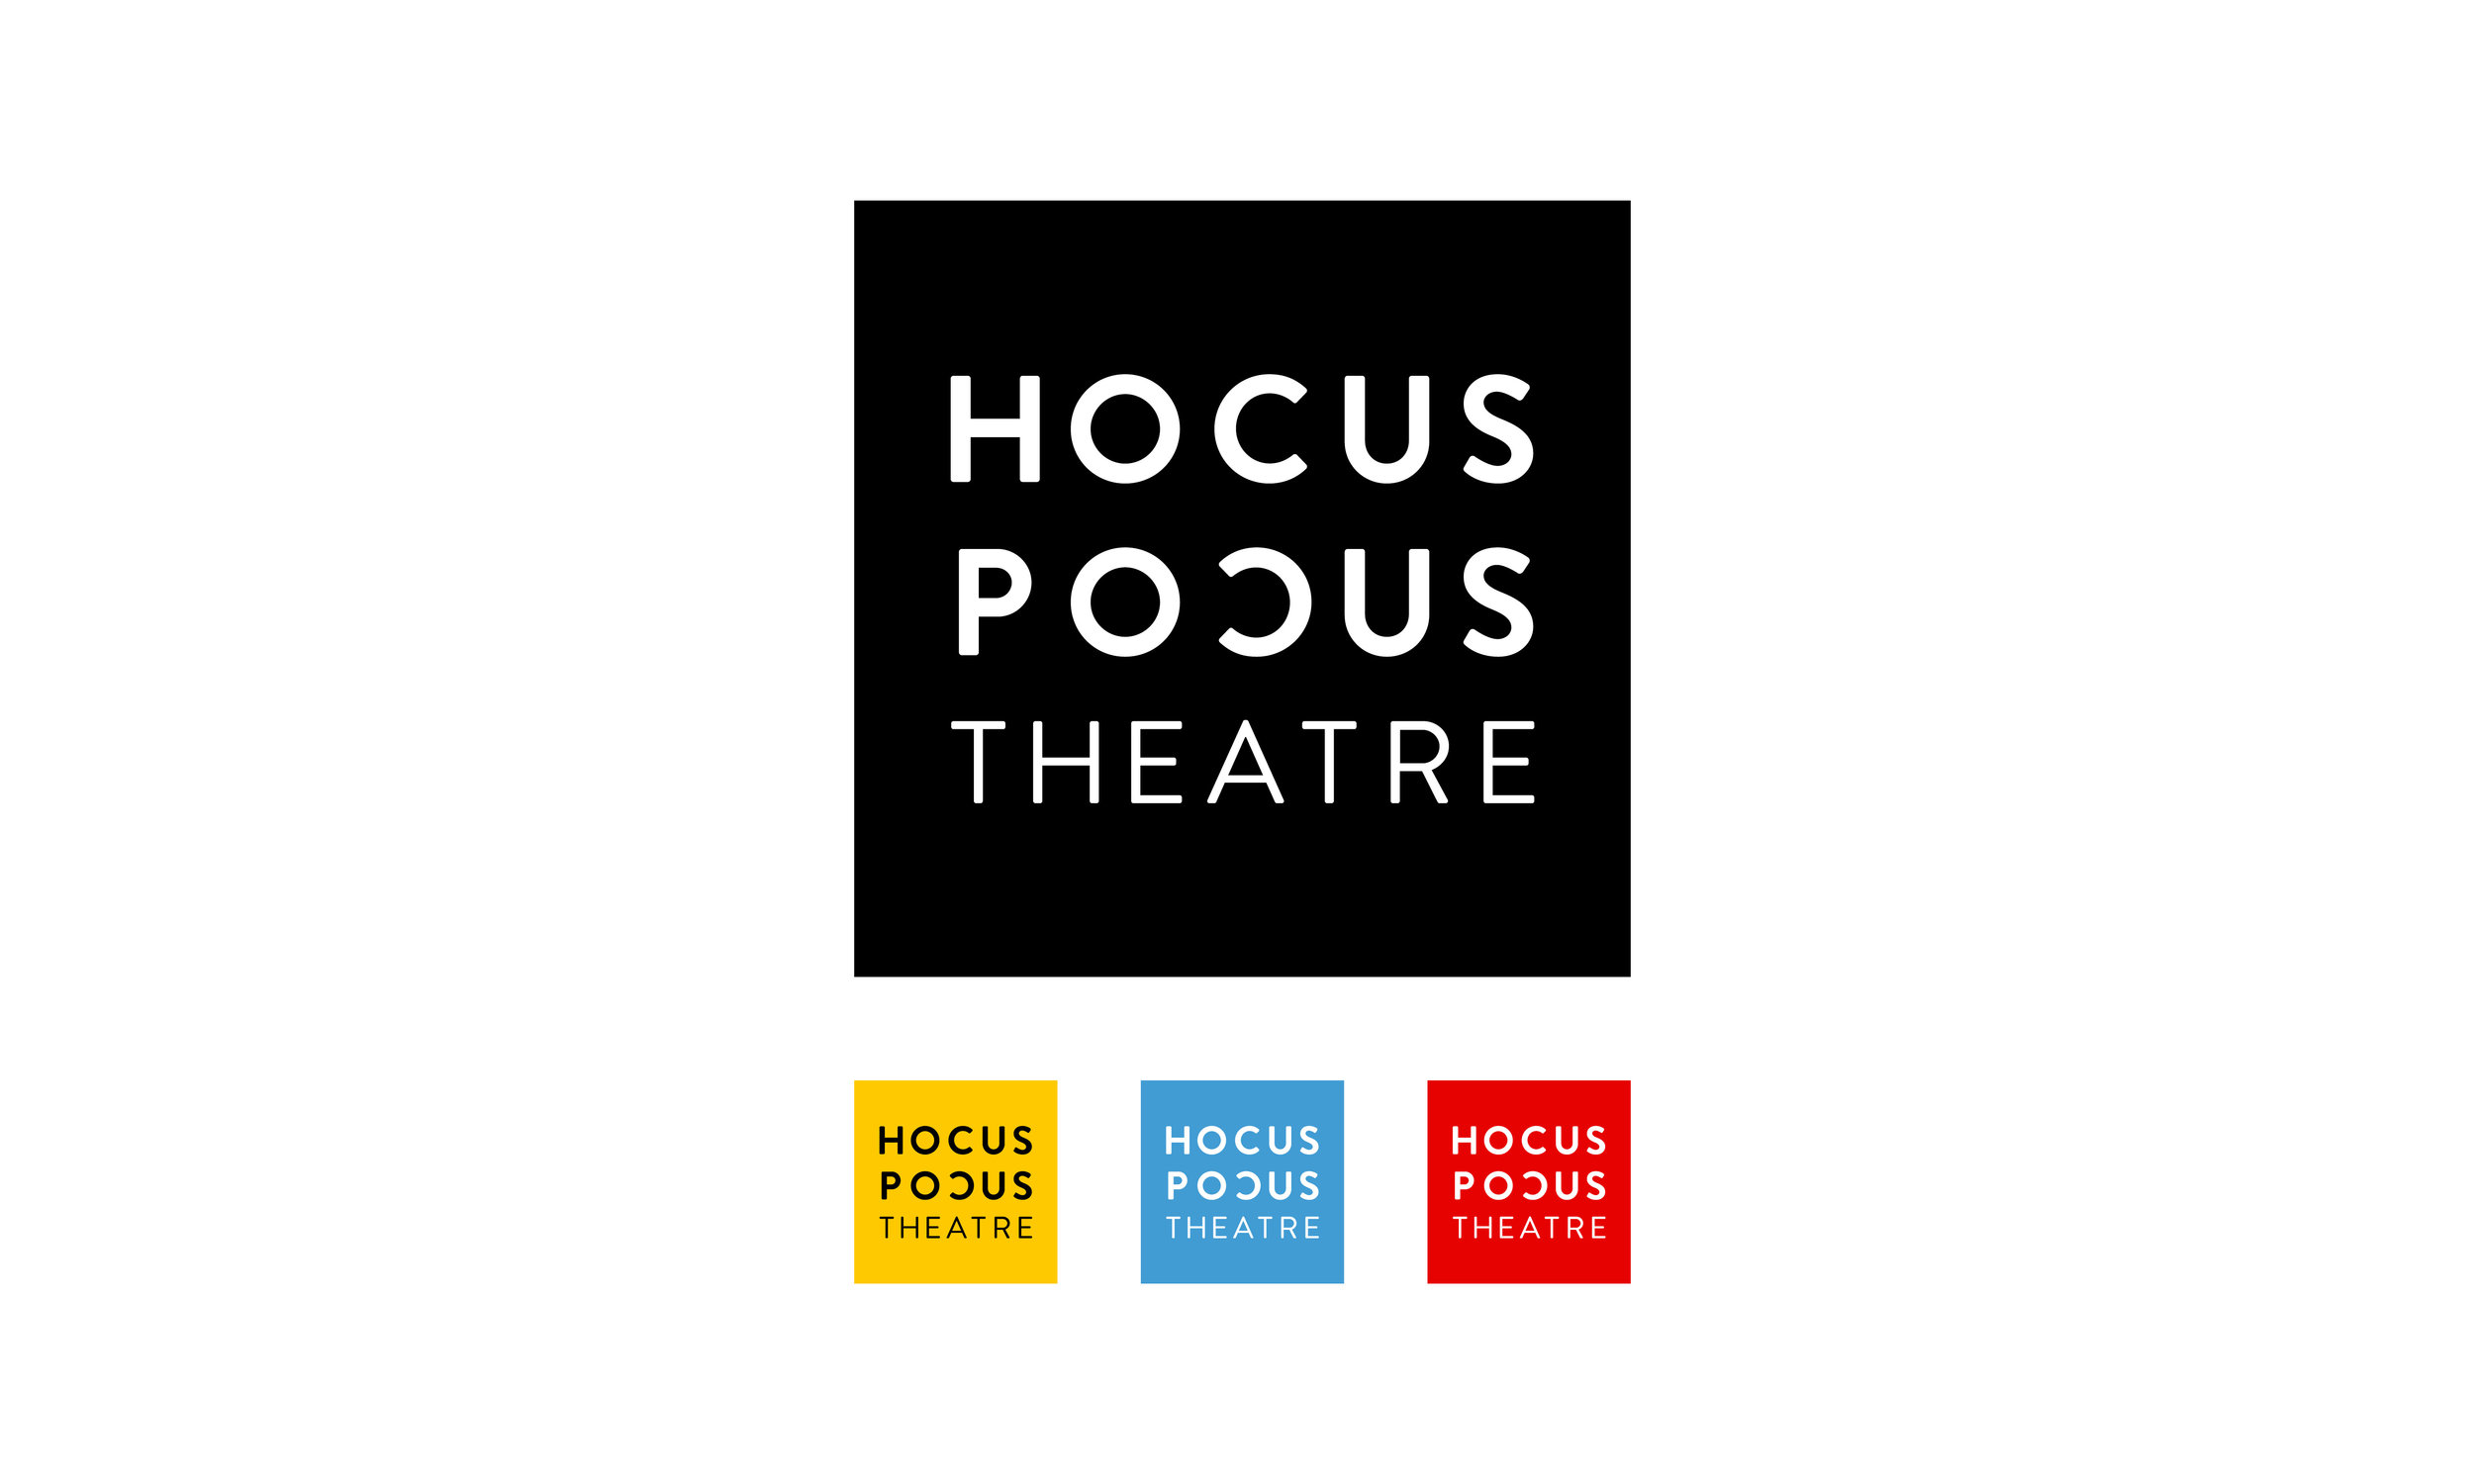 Client: Hocus Pocus Theatre